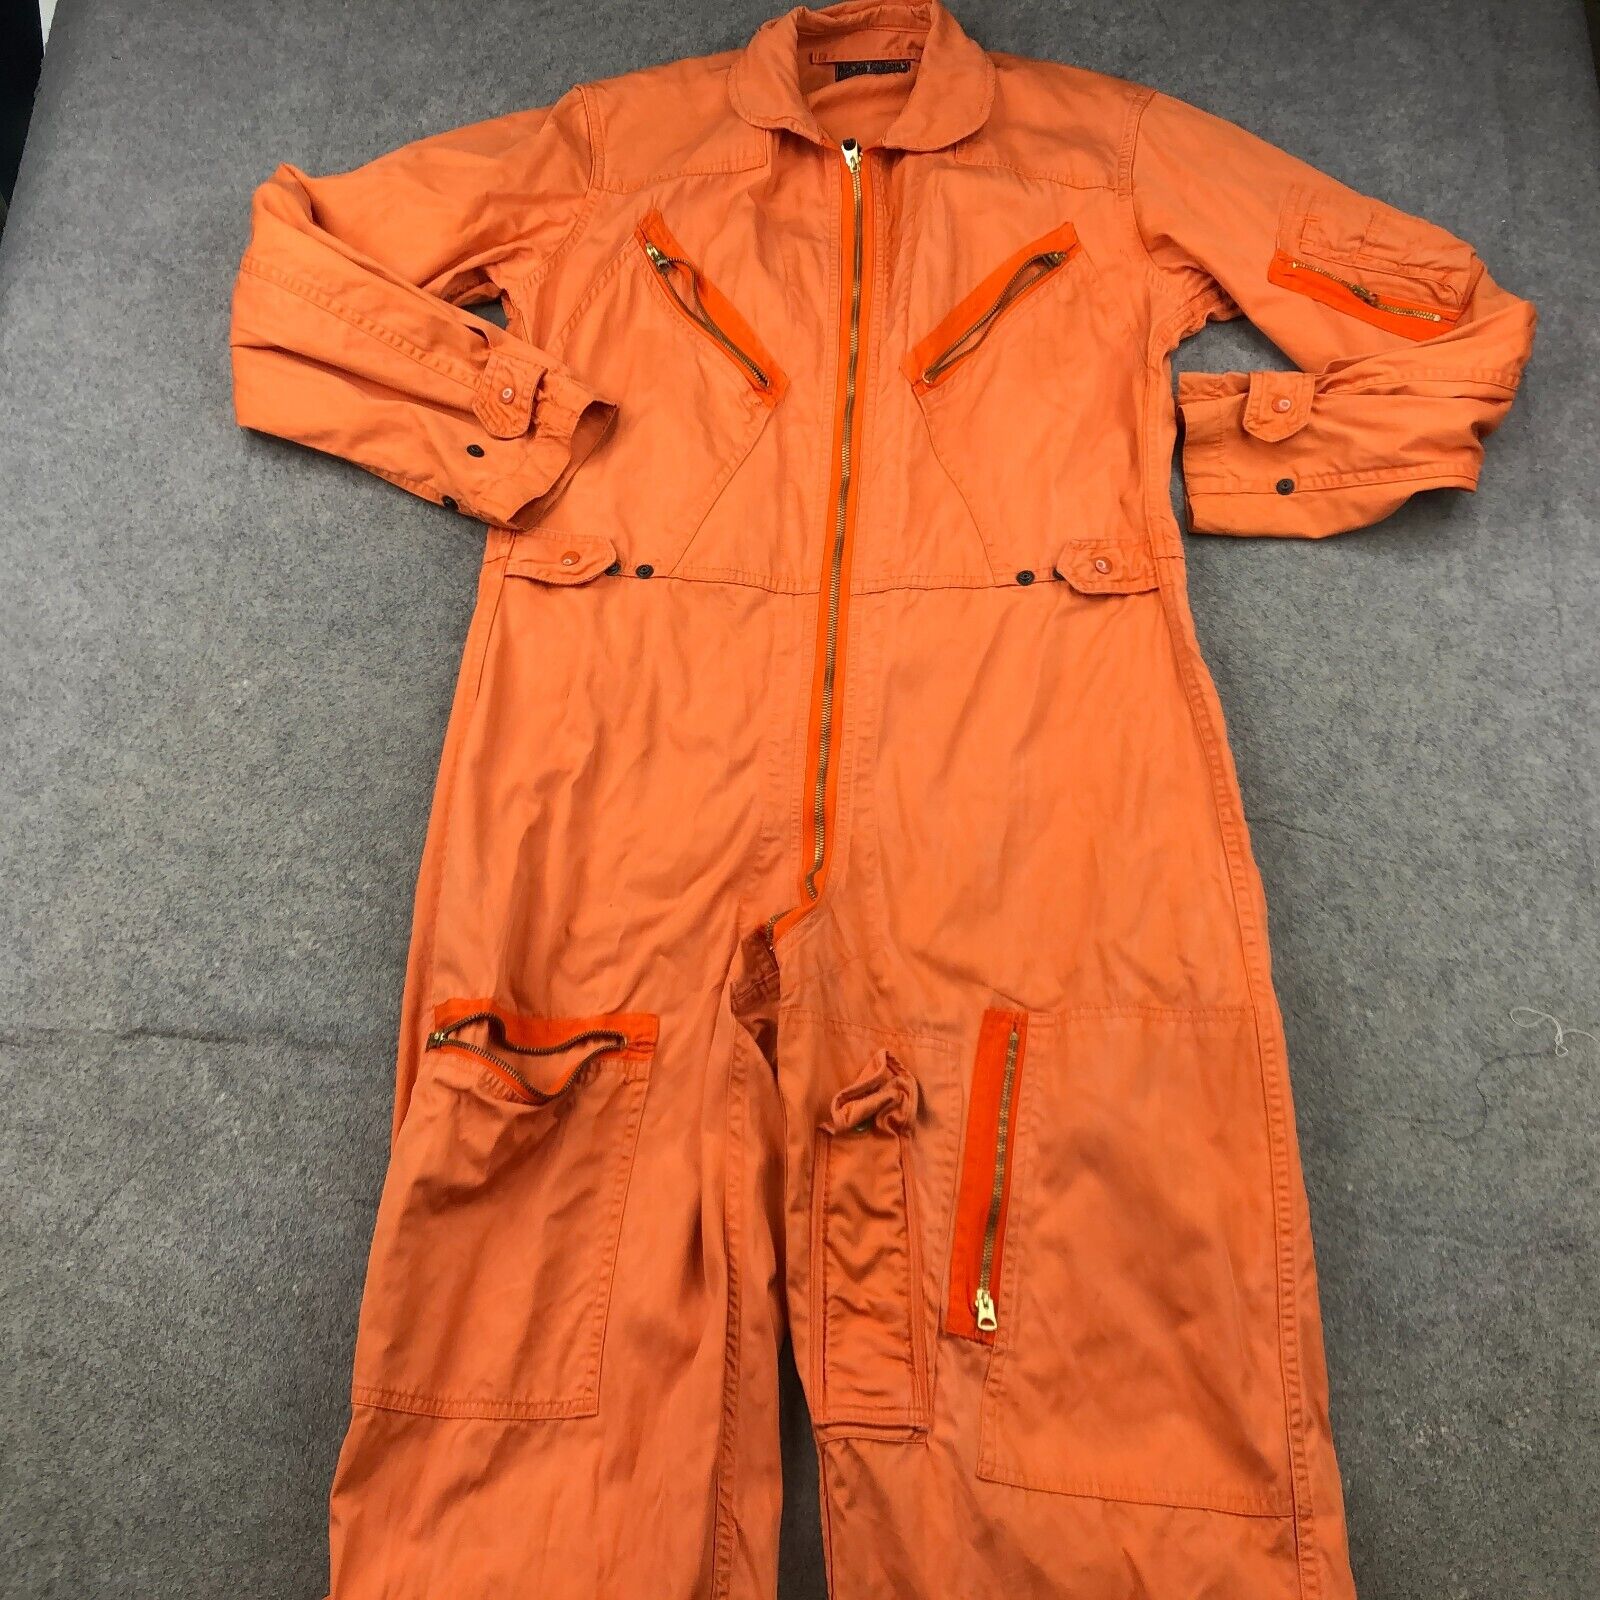 Vintage Flight Suit Orange Coveralls Jumpsuit Medium US Military USAF 1960s